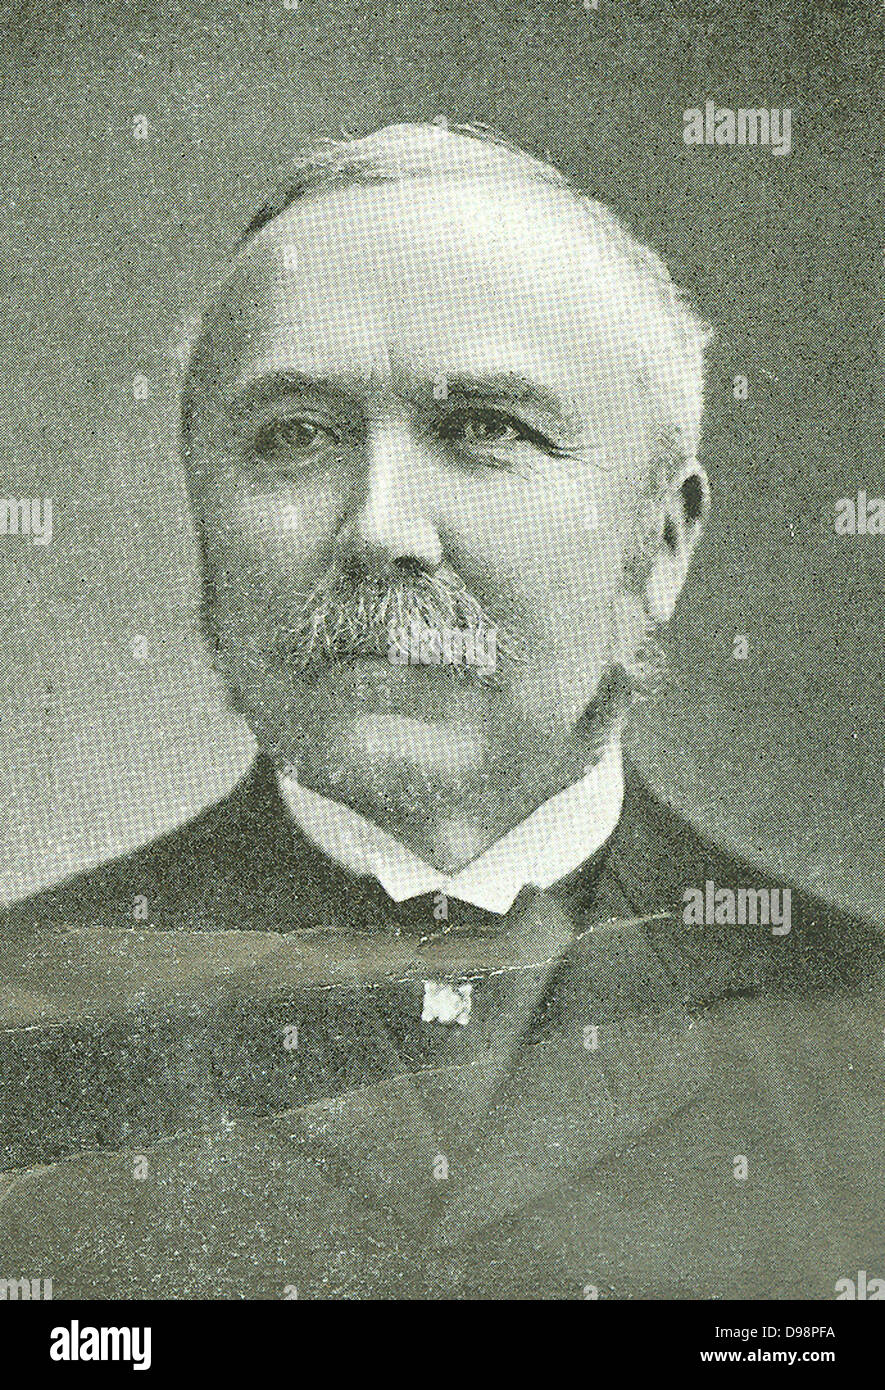 Sir Henry Campbell-Bannerman GCB (7 septembre 1836 - 22 avril 1908) était un homme politique français qui a été Premier Ministre du Royaume-Uni de 1905 à 1908 et chef du Parti libéral de 1899 à 1908 Banque D'Images